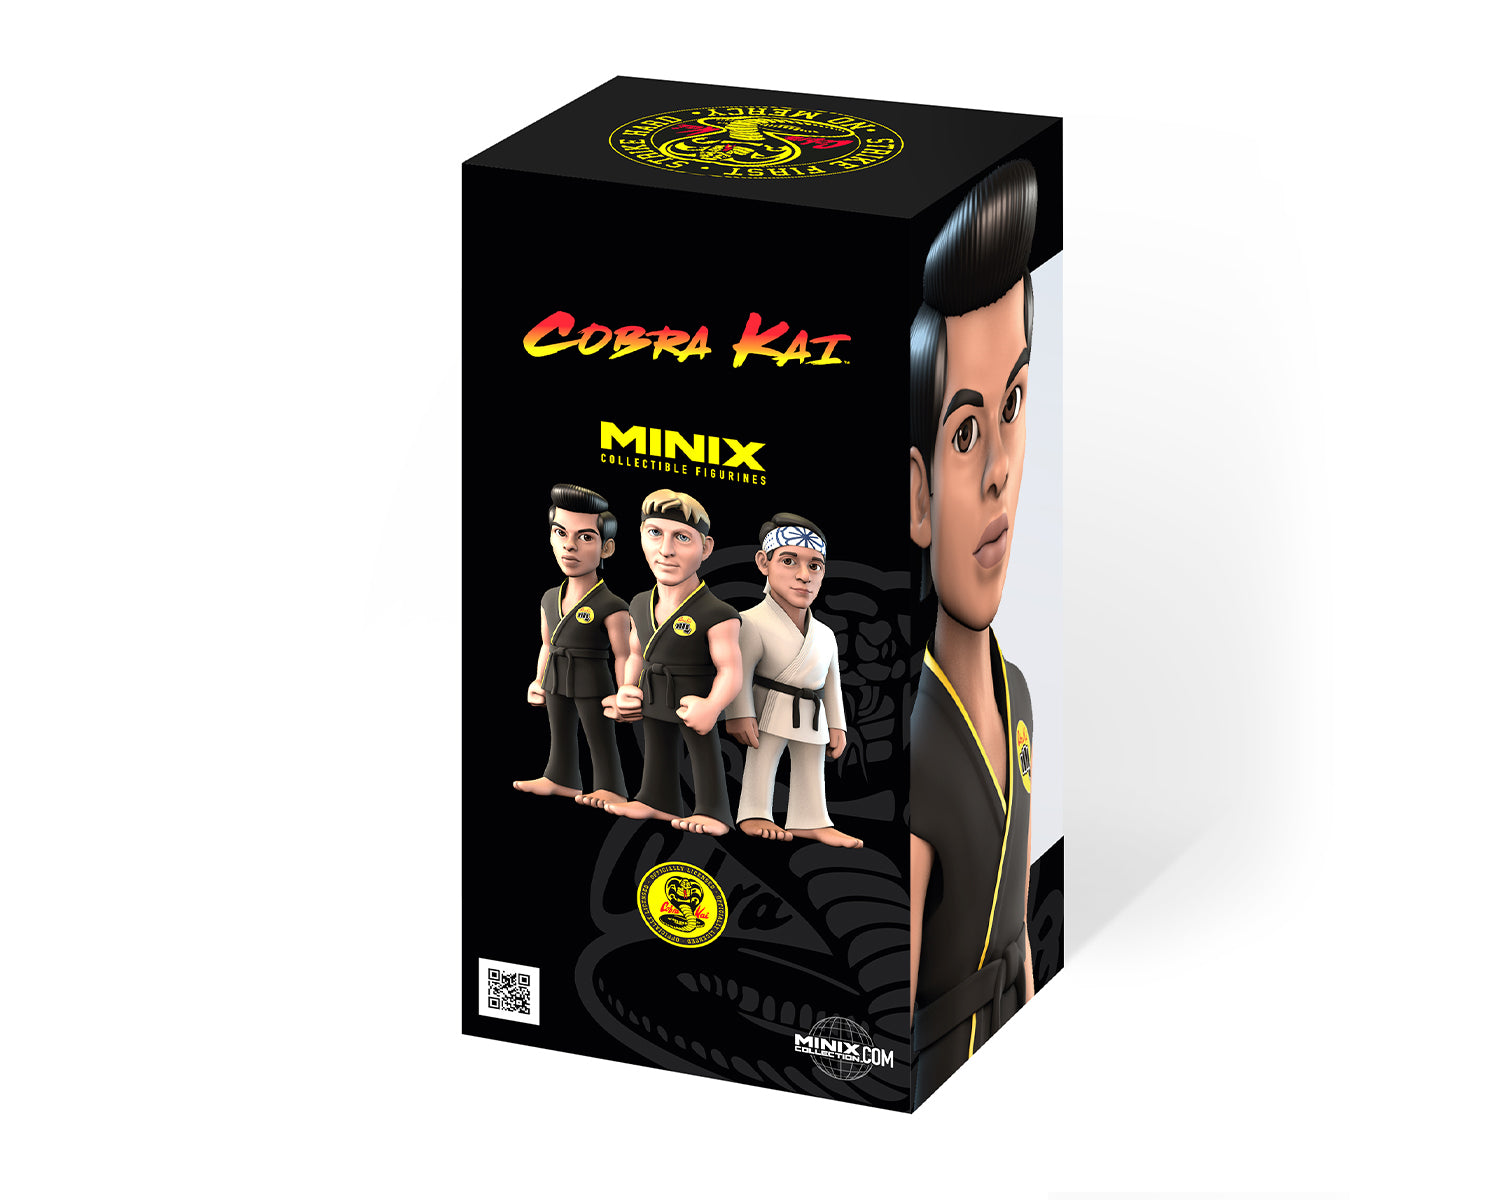 Minix -TV SERIES -COBRA KAI -MIGUEL DIAZ -Figurine -12 cm